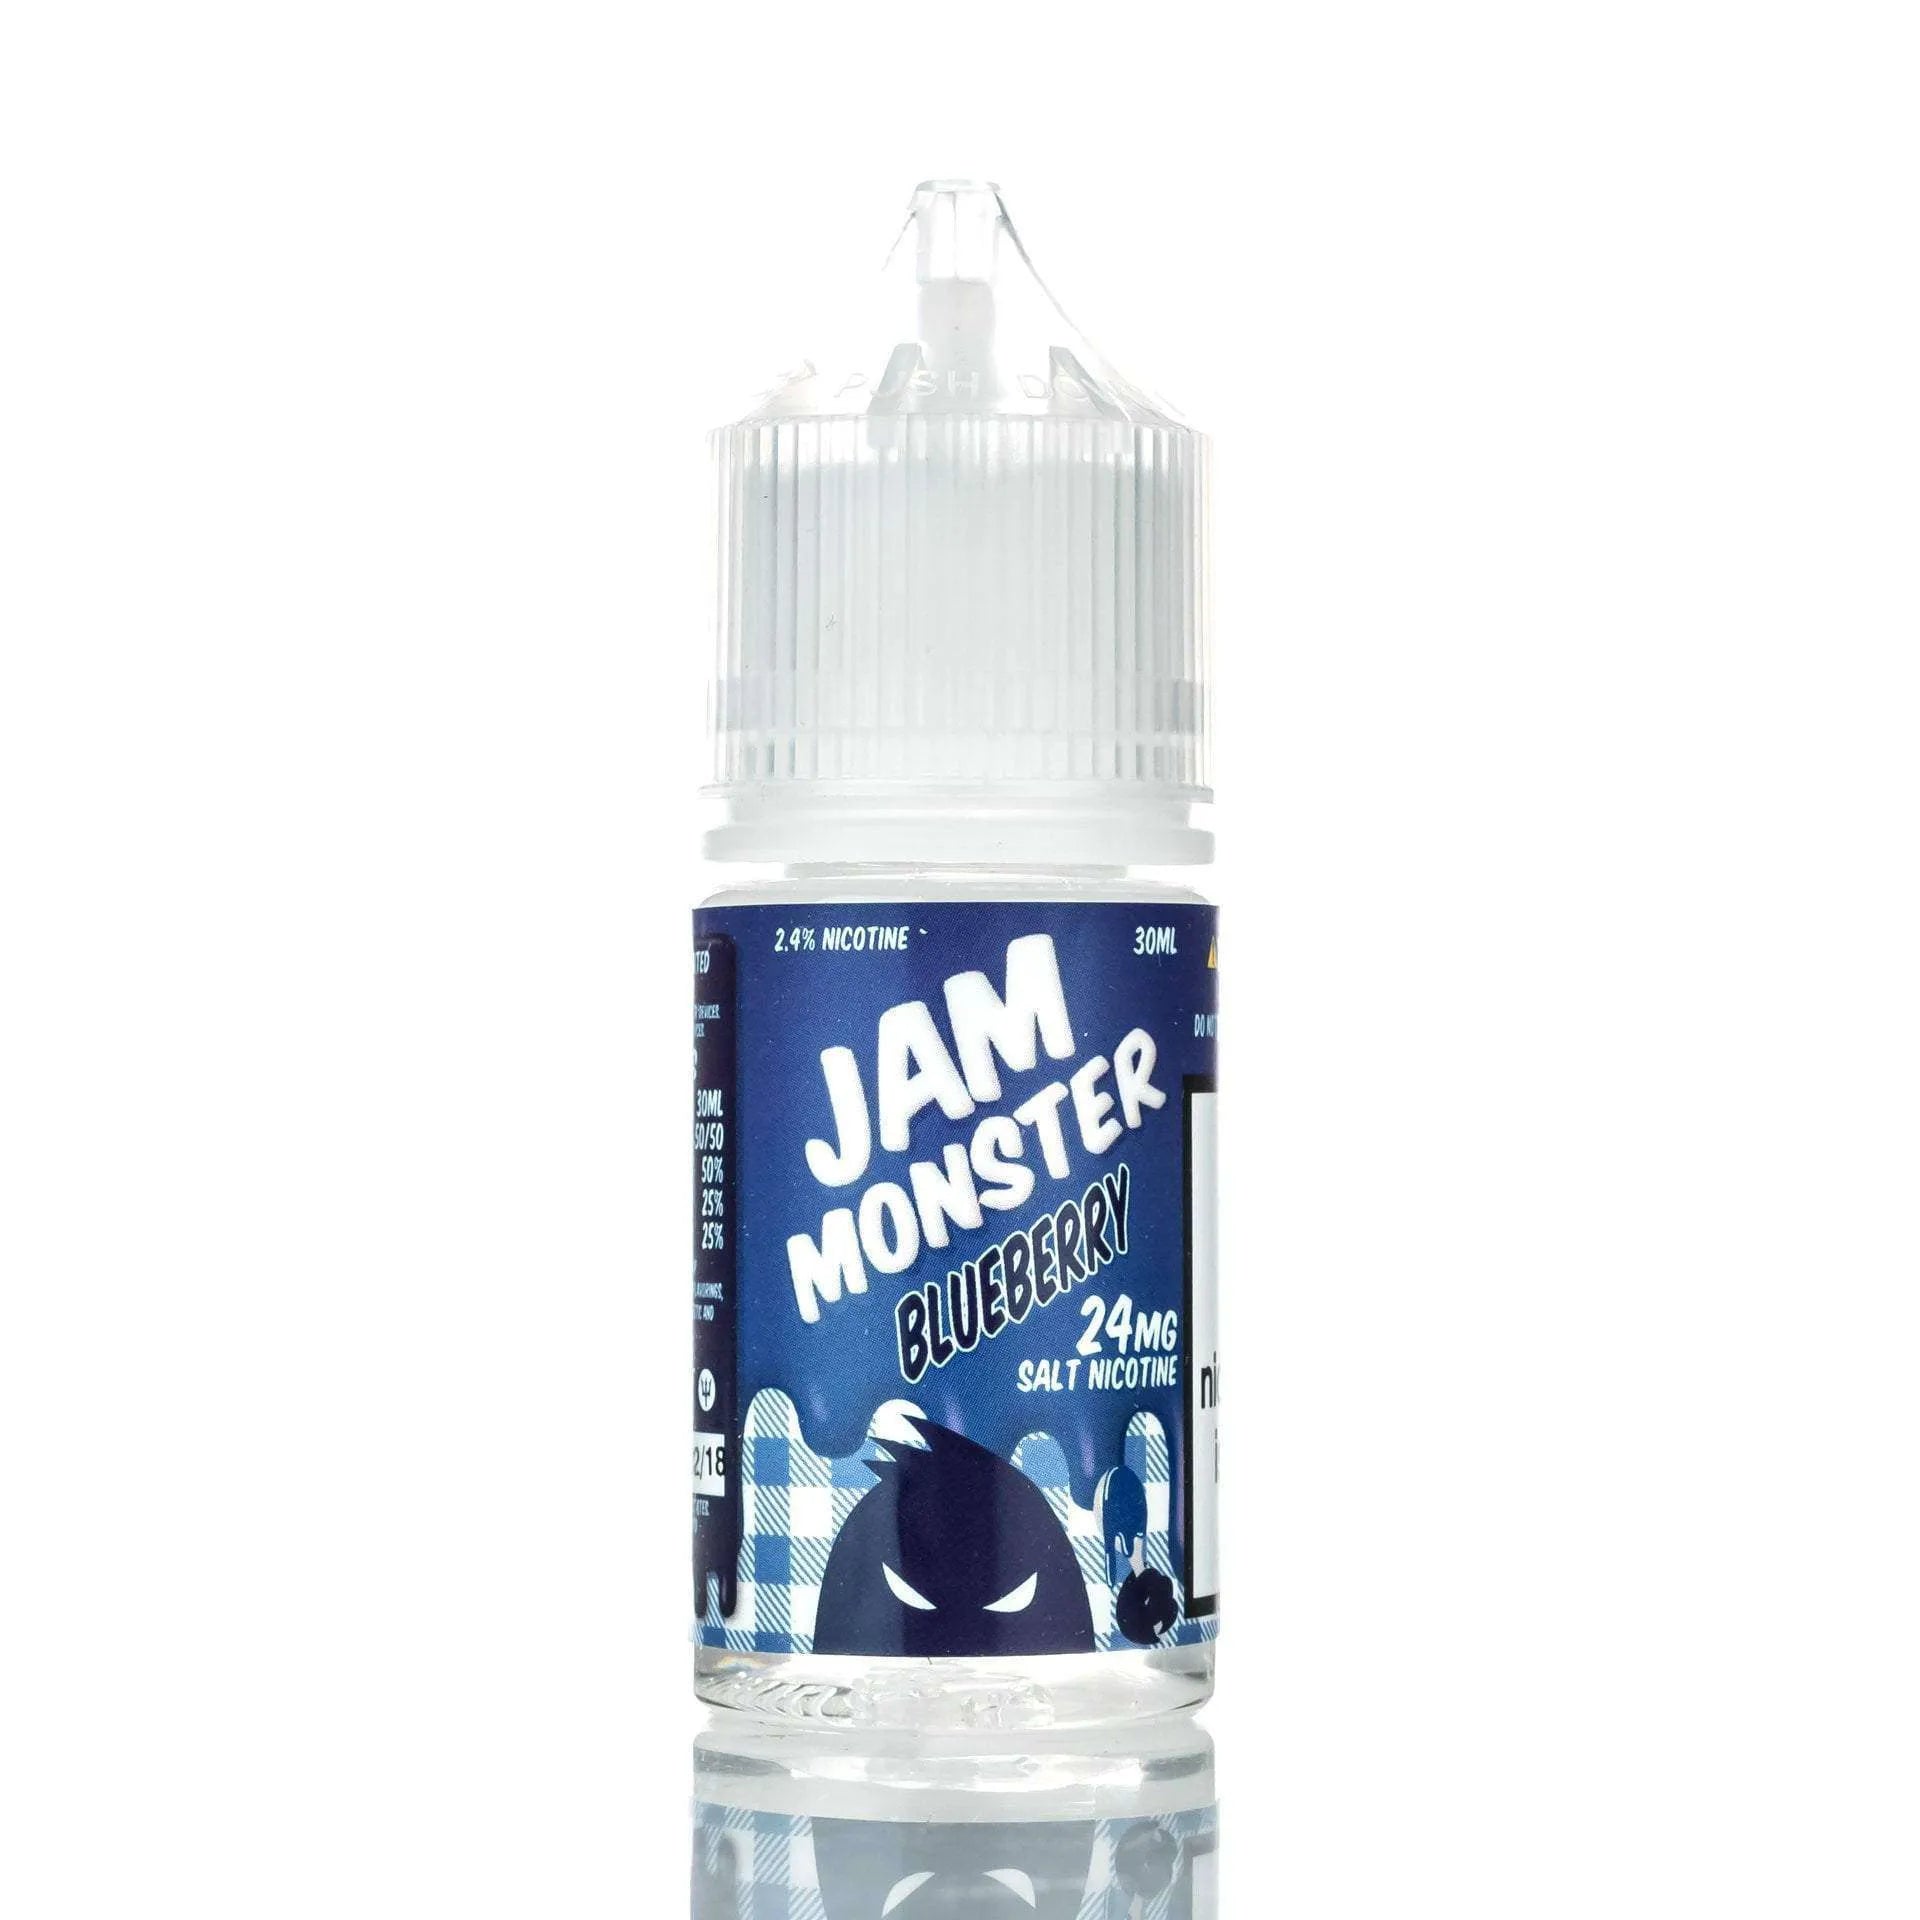 Jam Monster E-Liquid Nicotine Salt E Liquid 24mg Jam Monster Salts - Blueberry Jam - 30ml